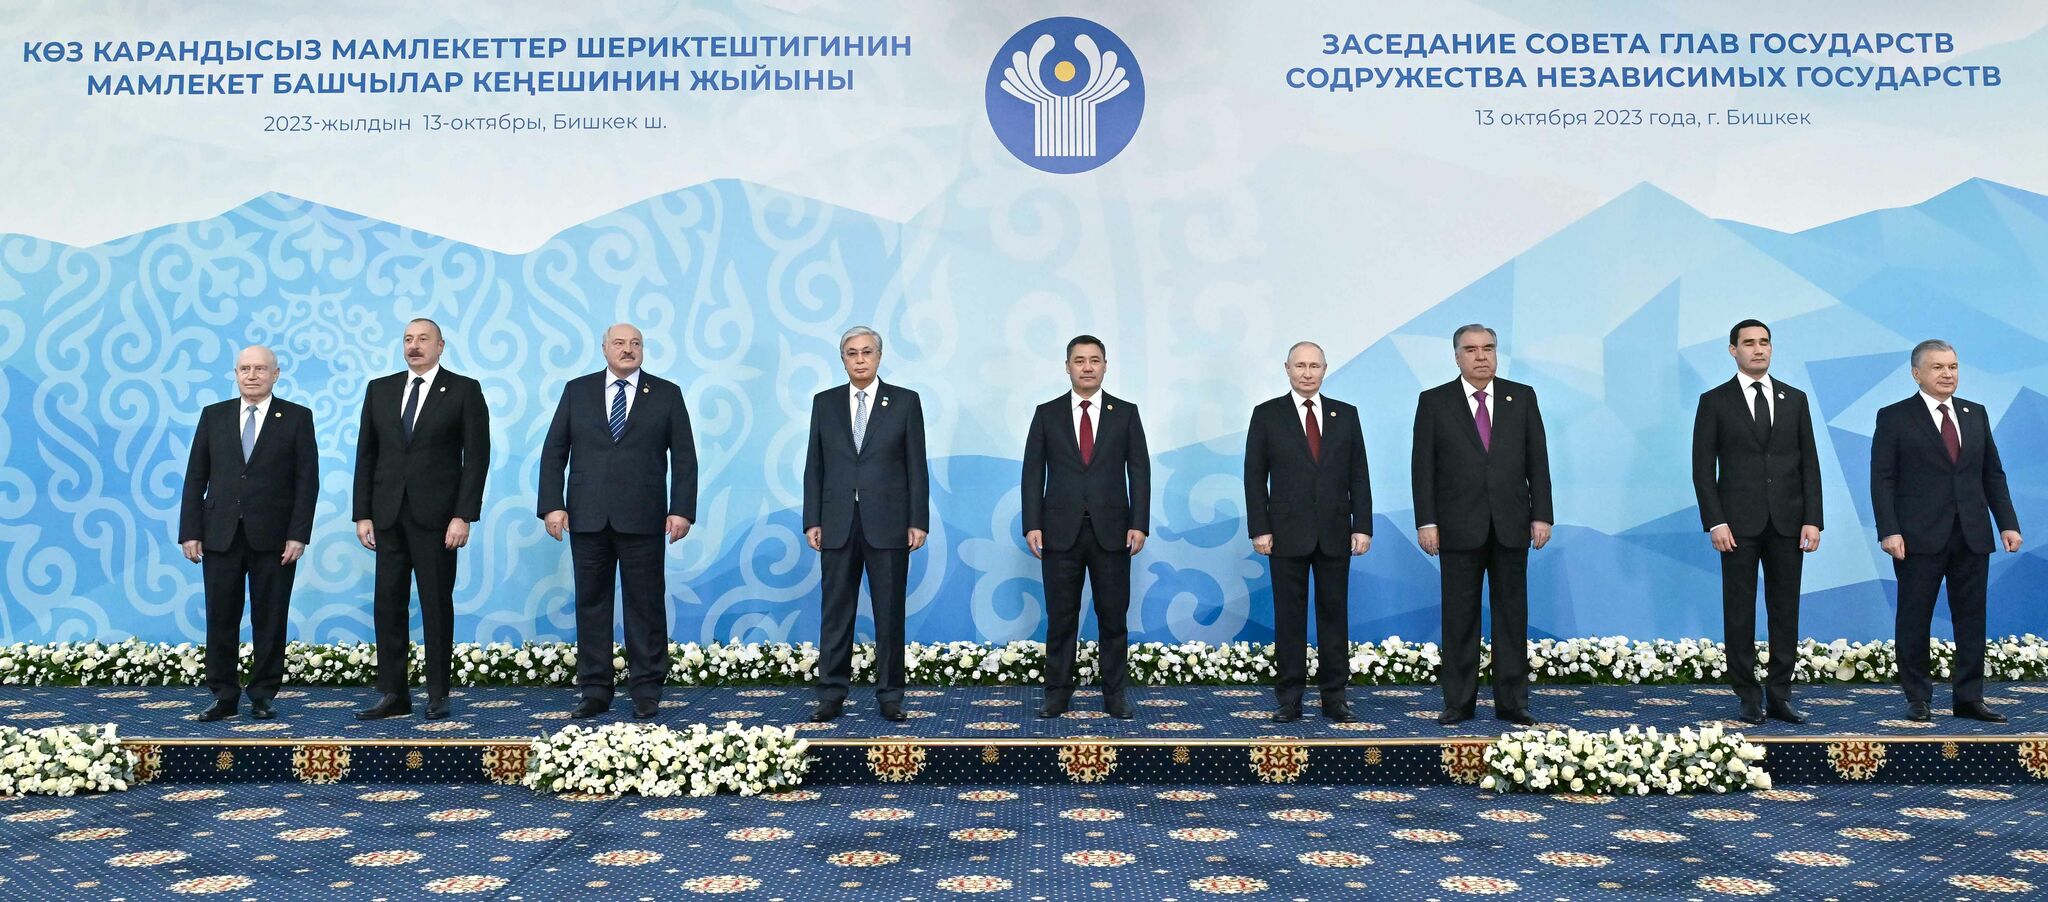 Президент Казахстана принял участие в заседании Совета глав государств – участников СНГ